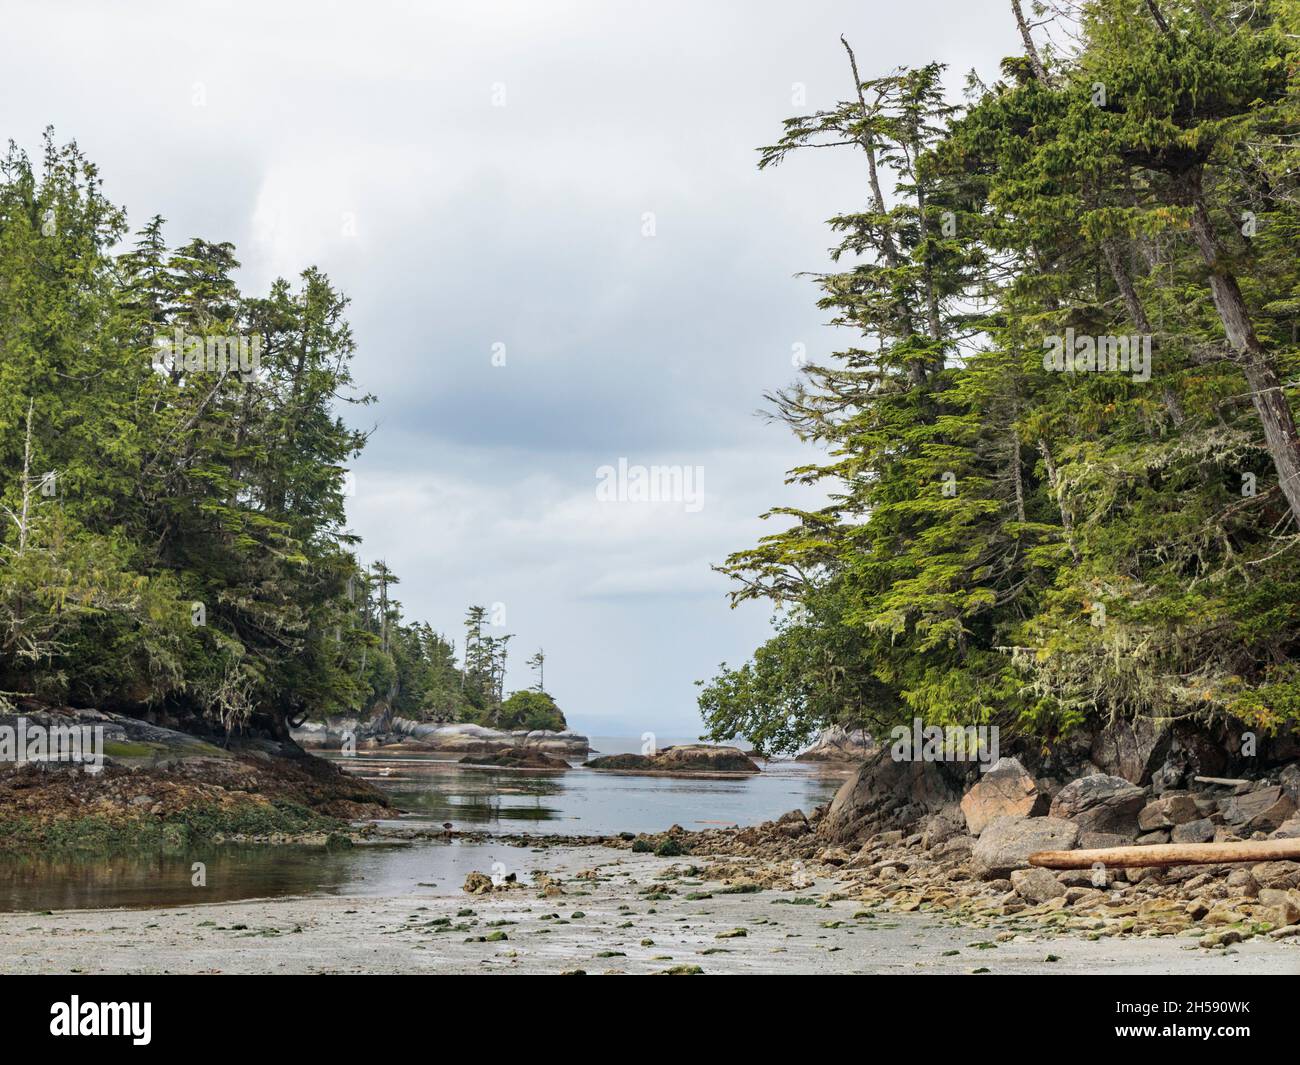 Una vista dalla spiaggia a bassa marea di alberi, isolotti rocciosi e sabbia bagnata in una baia sul bordo orientale del remoto Queen Charlotte Strait, British Columbia. Foto Stock